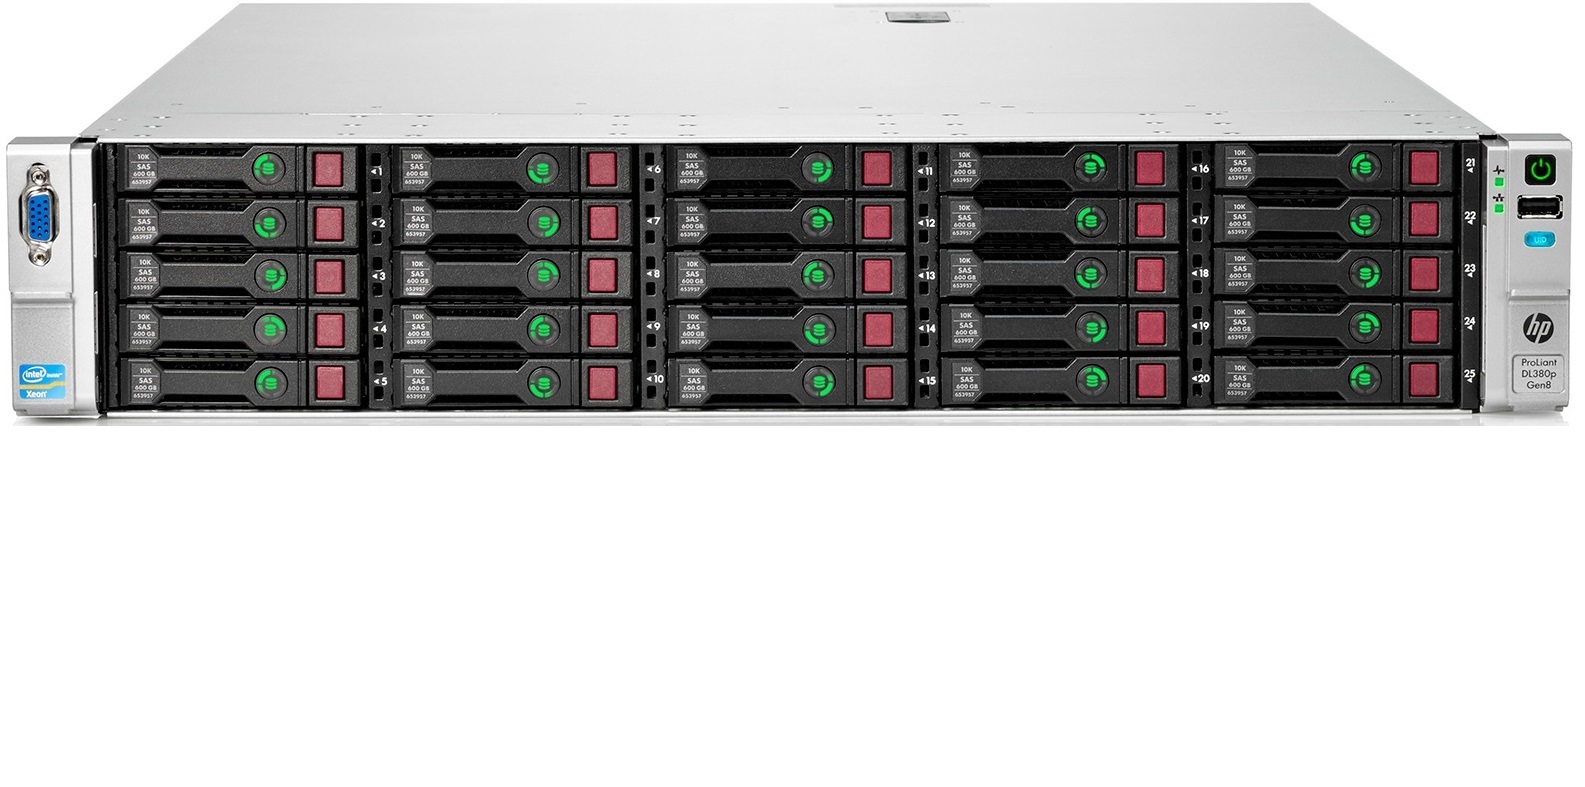 HP DL380 Gen8/Gen9 - Б/У серверы